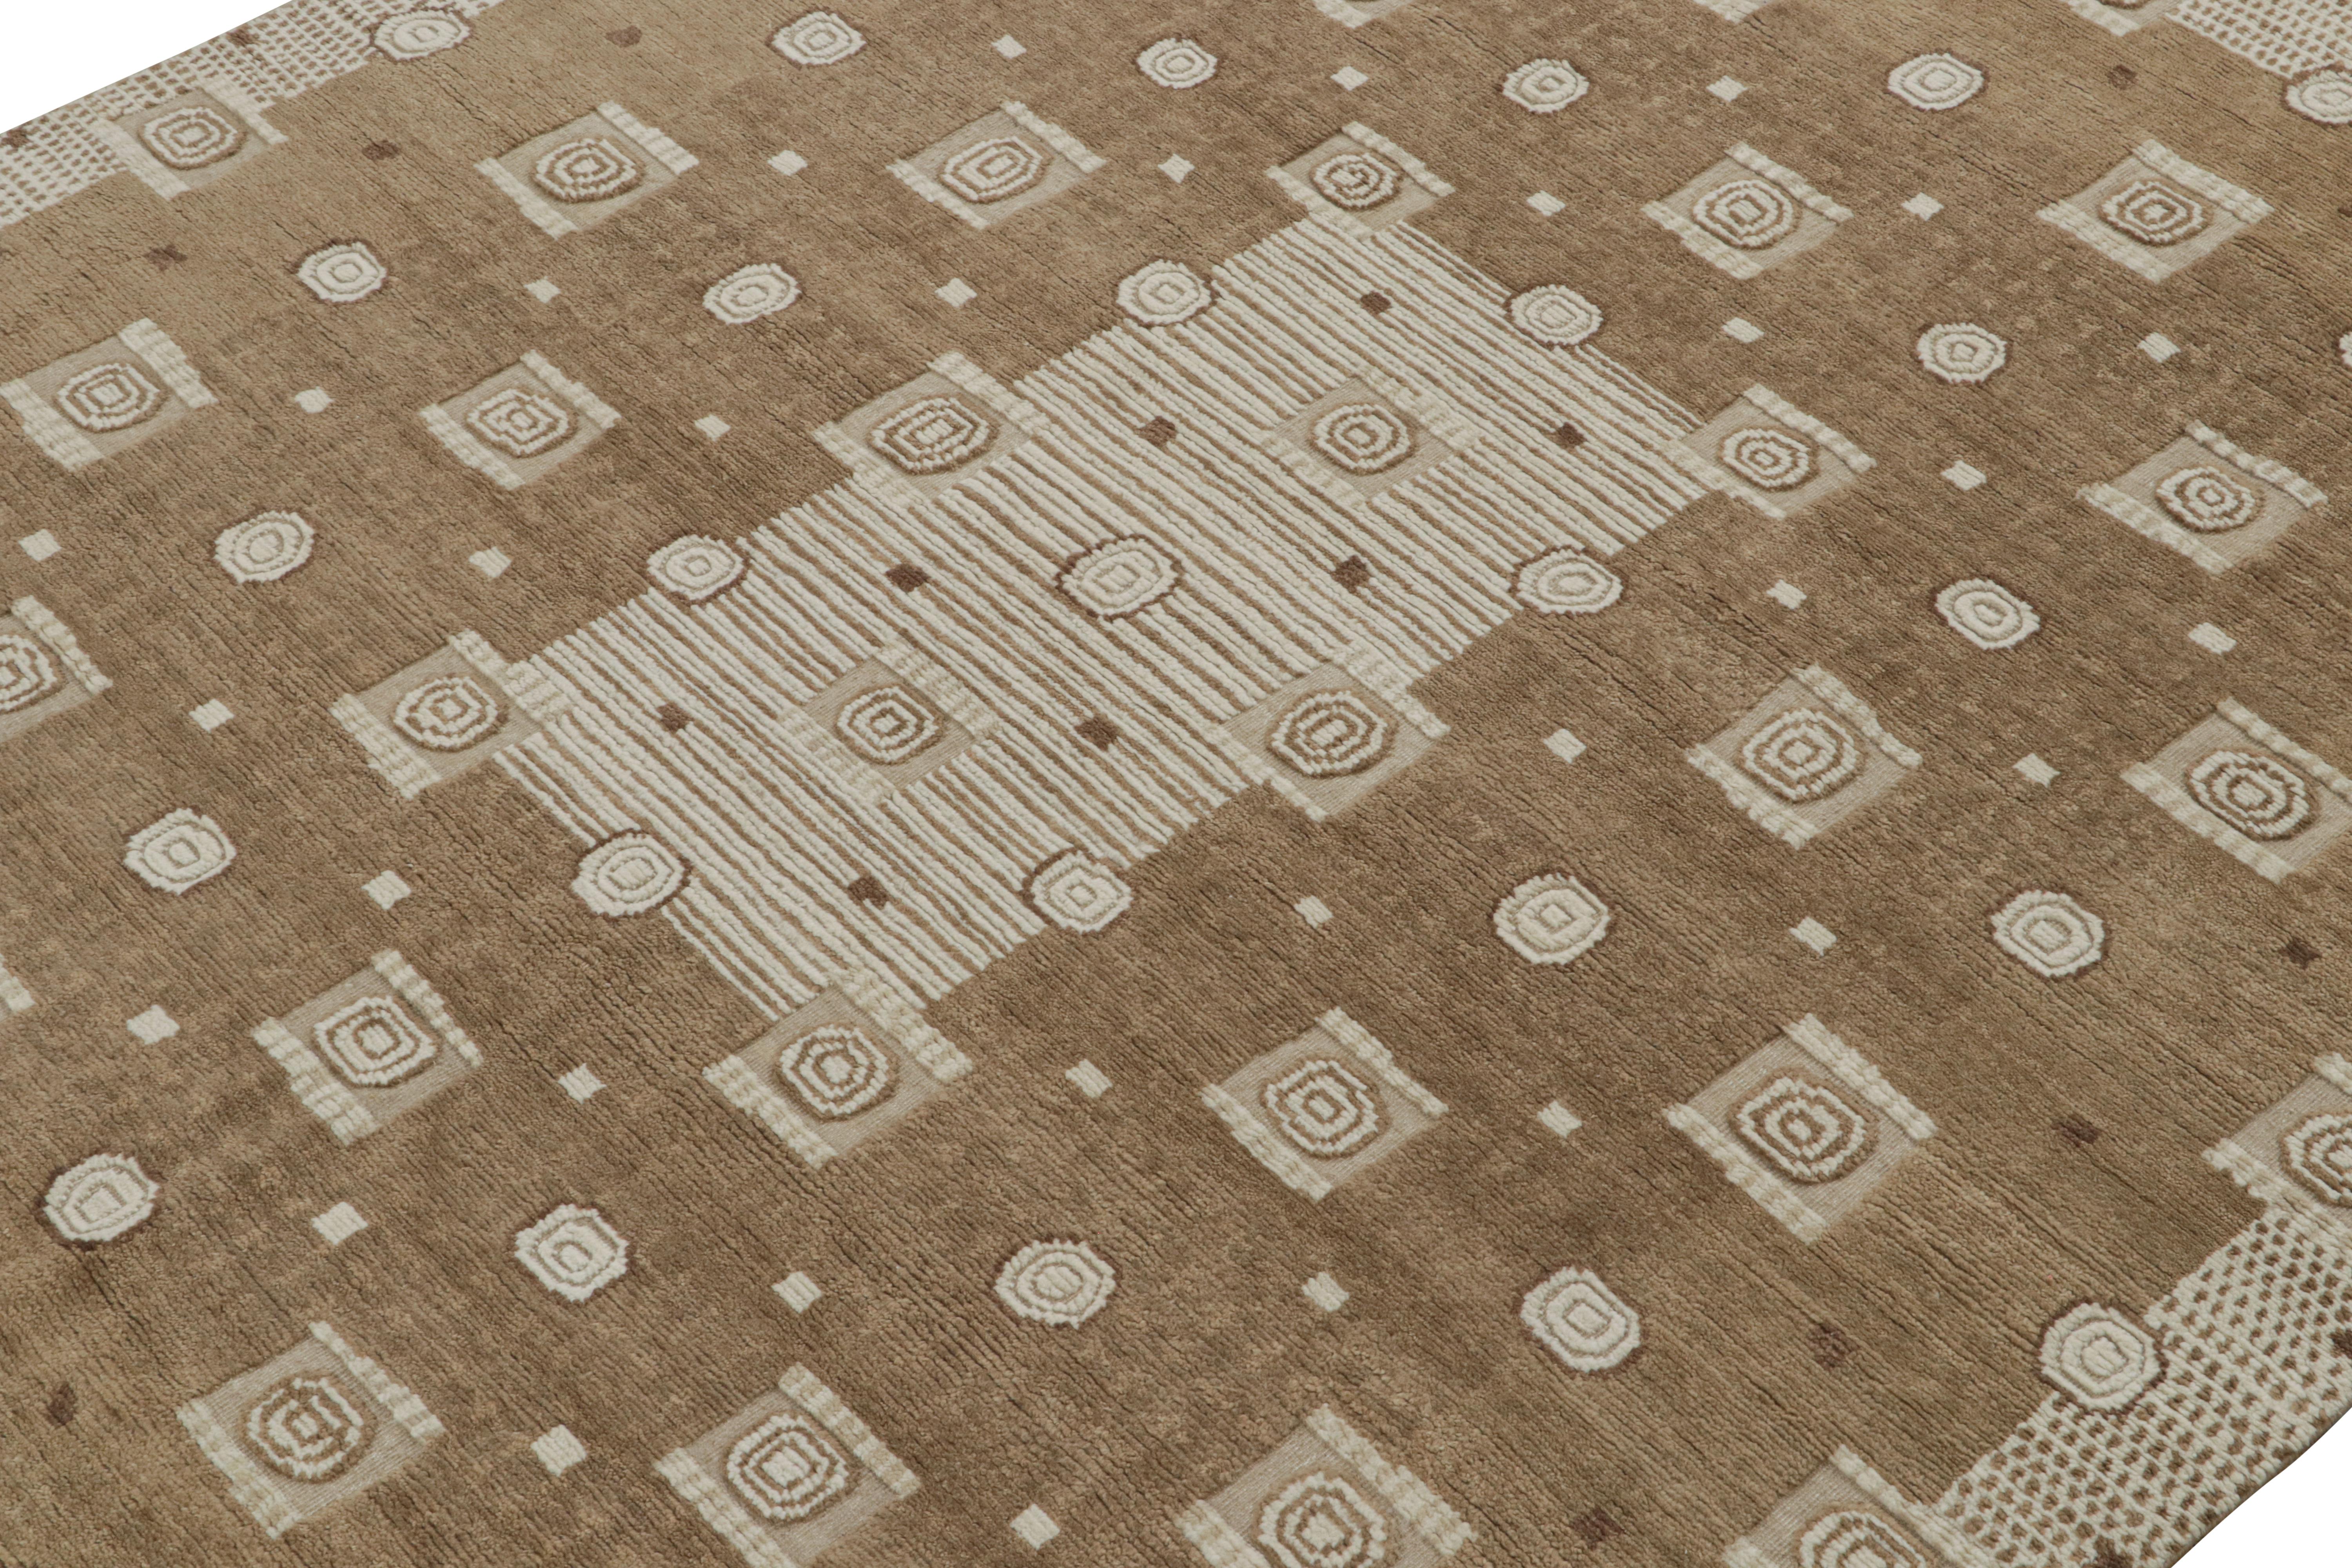 Indien Rug & Kilim's Scandinavian Style Custom rug in Brown & White Geometric Patterns (tapis personnalisé de style scandinave aux motifs géométriques bruns et blancs) en vente